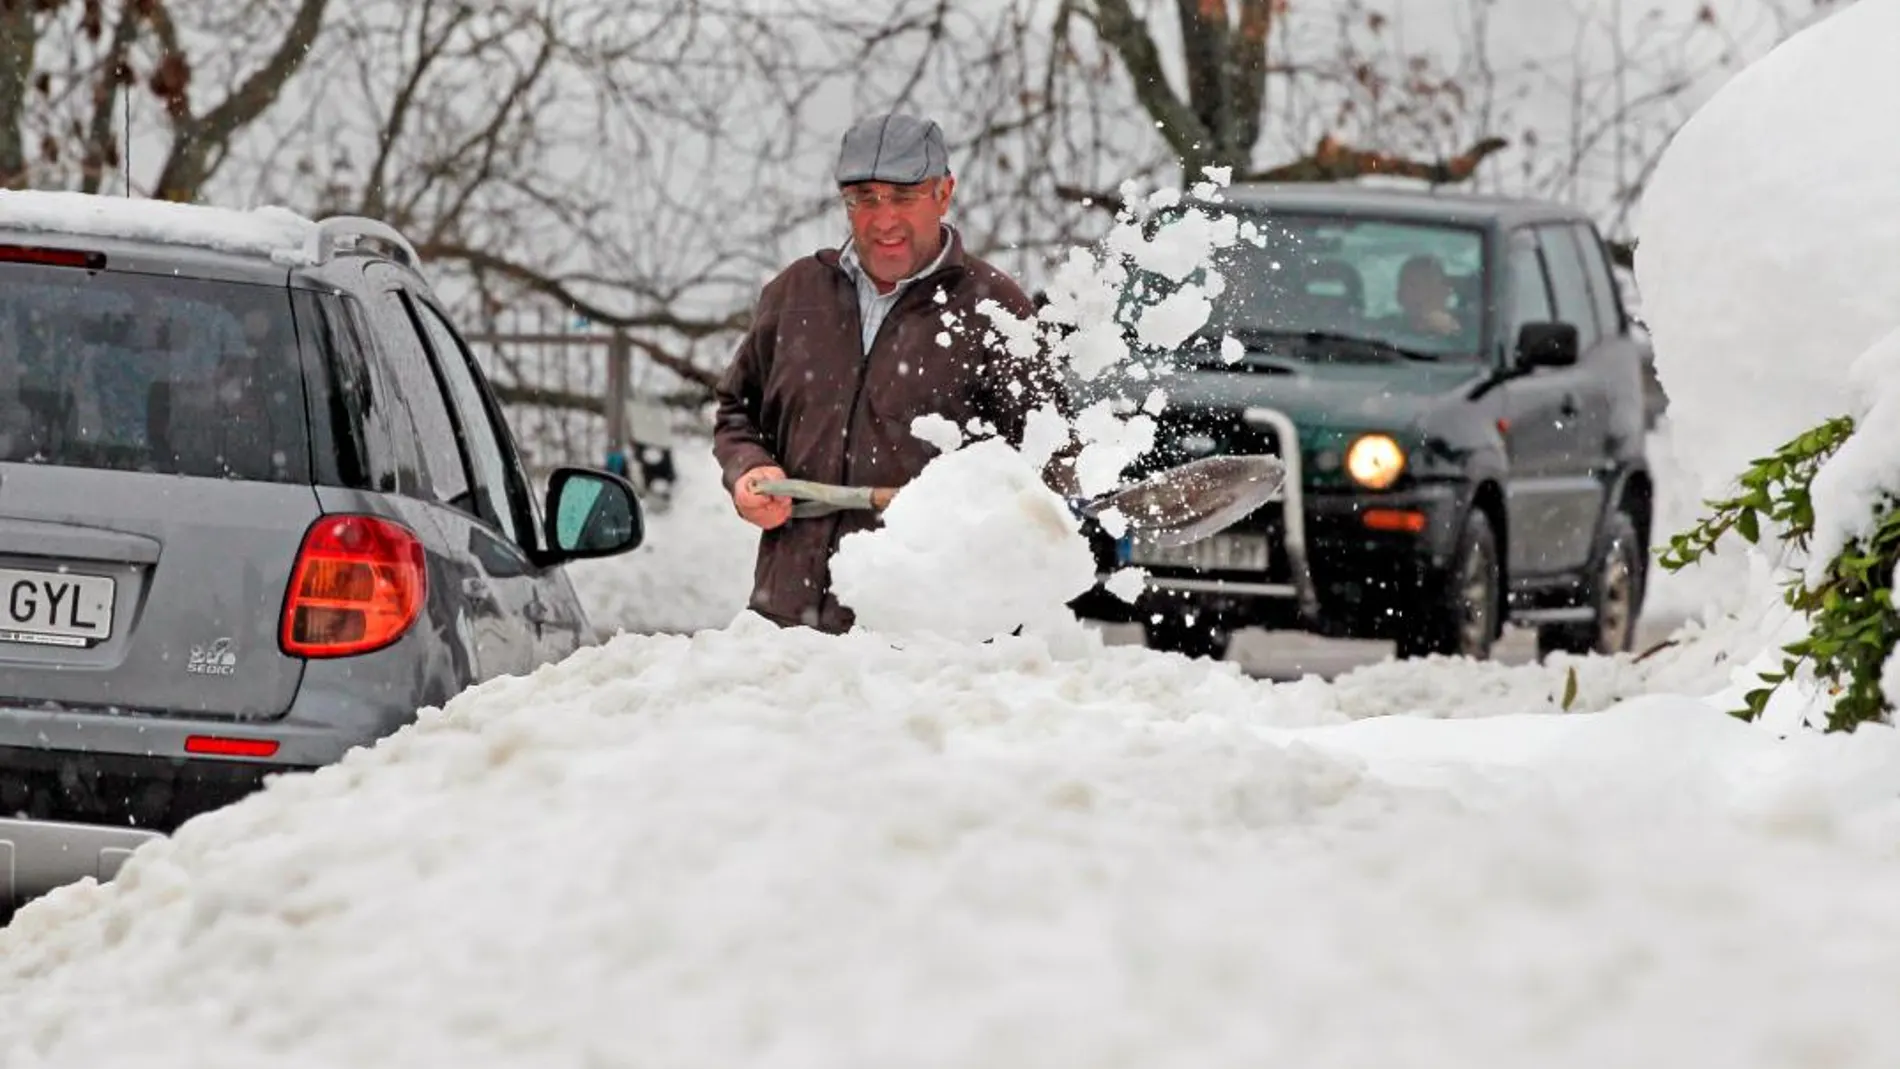 Un vecino del pueblo de Pajares trata de sacar su coche tras la nevada de esta mañana / Foto. Efe